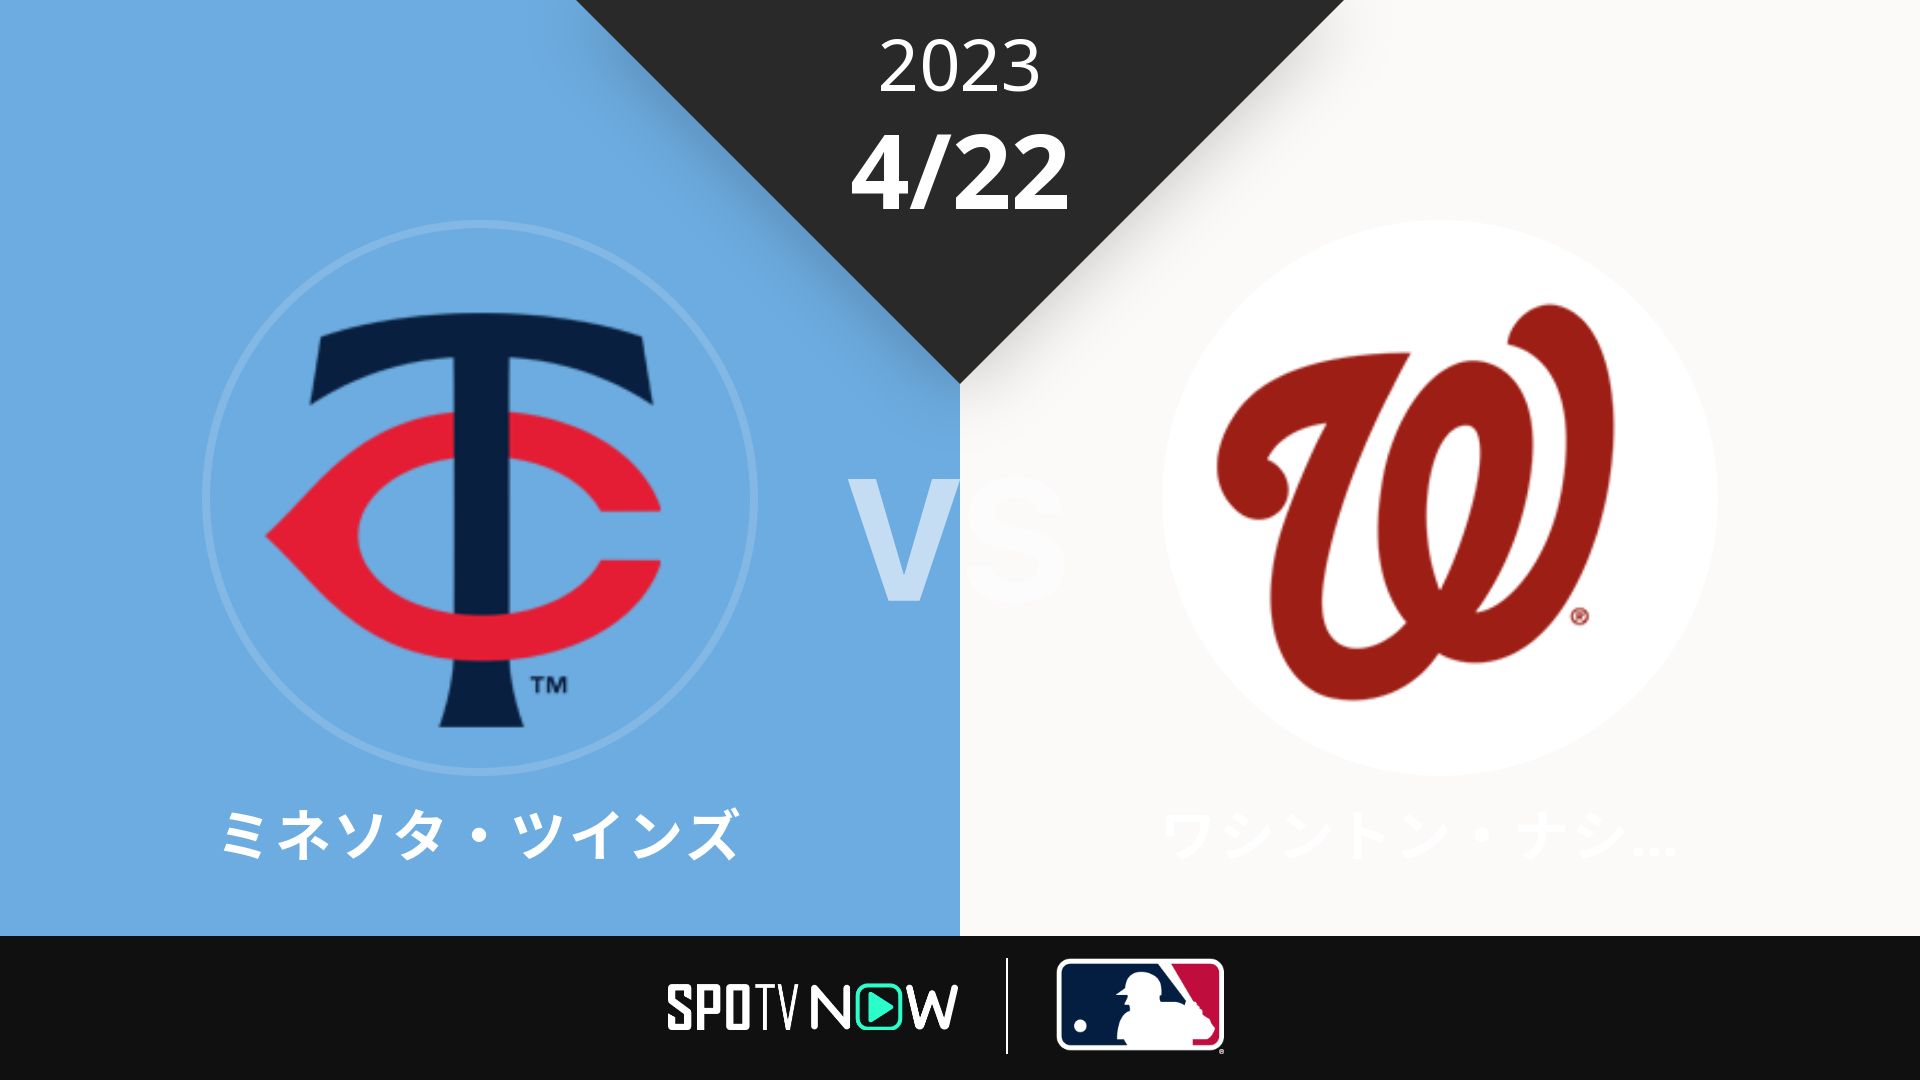 2023/4/22 ツインズ vs ナショナルズ [MLB]